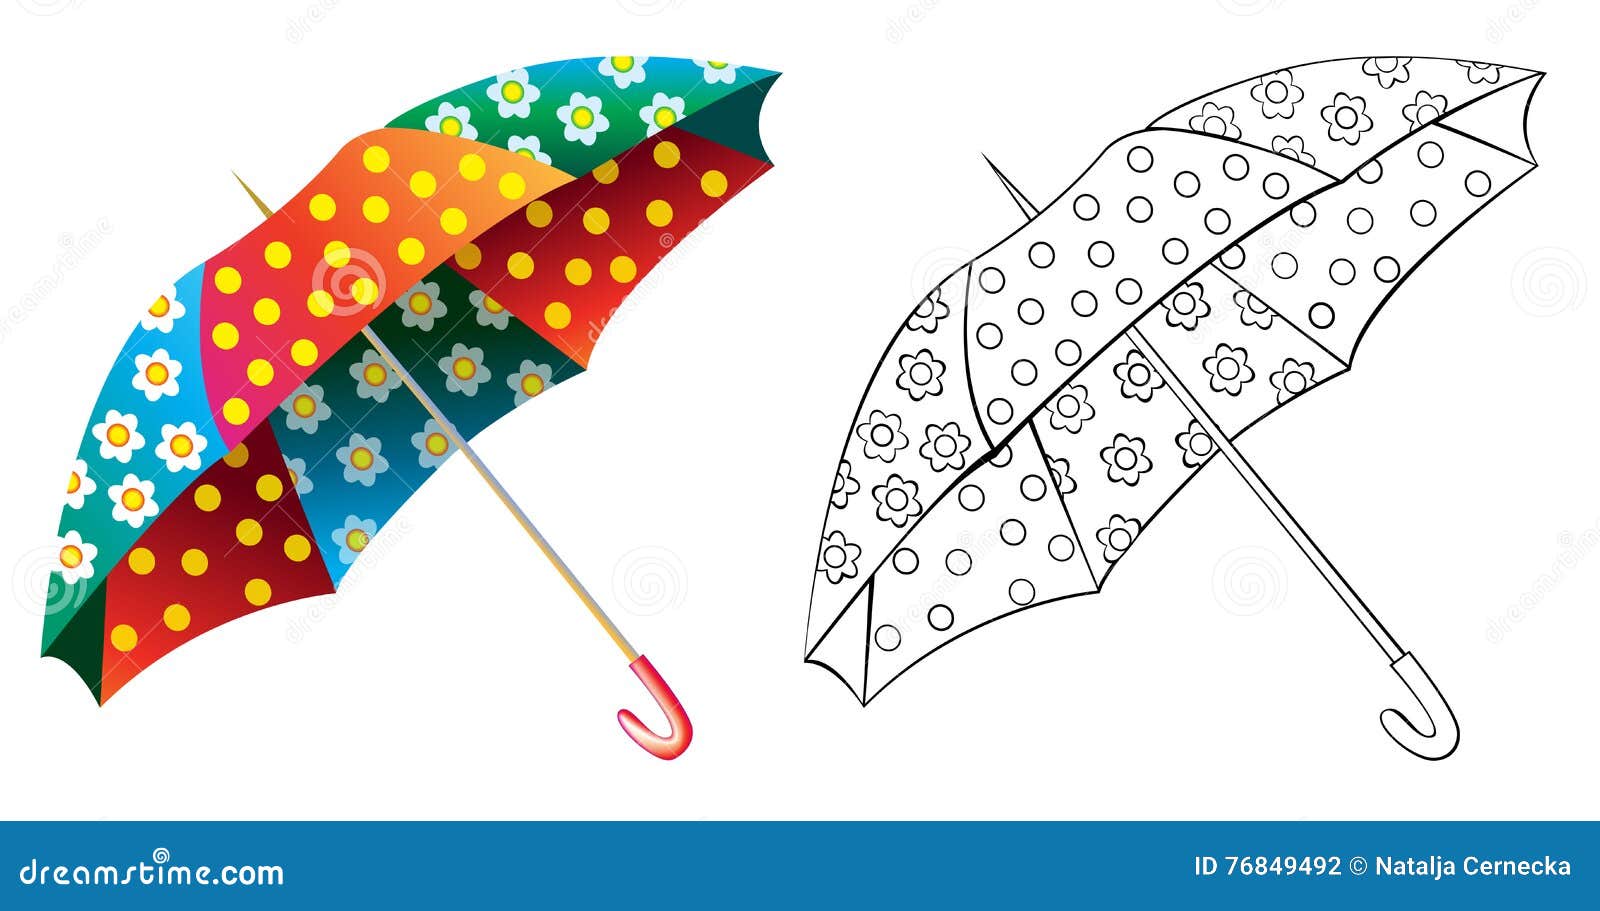 Зонтики сканворд. Узор на зонтике. Зонты паттерн. Китайский зонт вектор. Umbrella pattern for Kids.